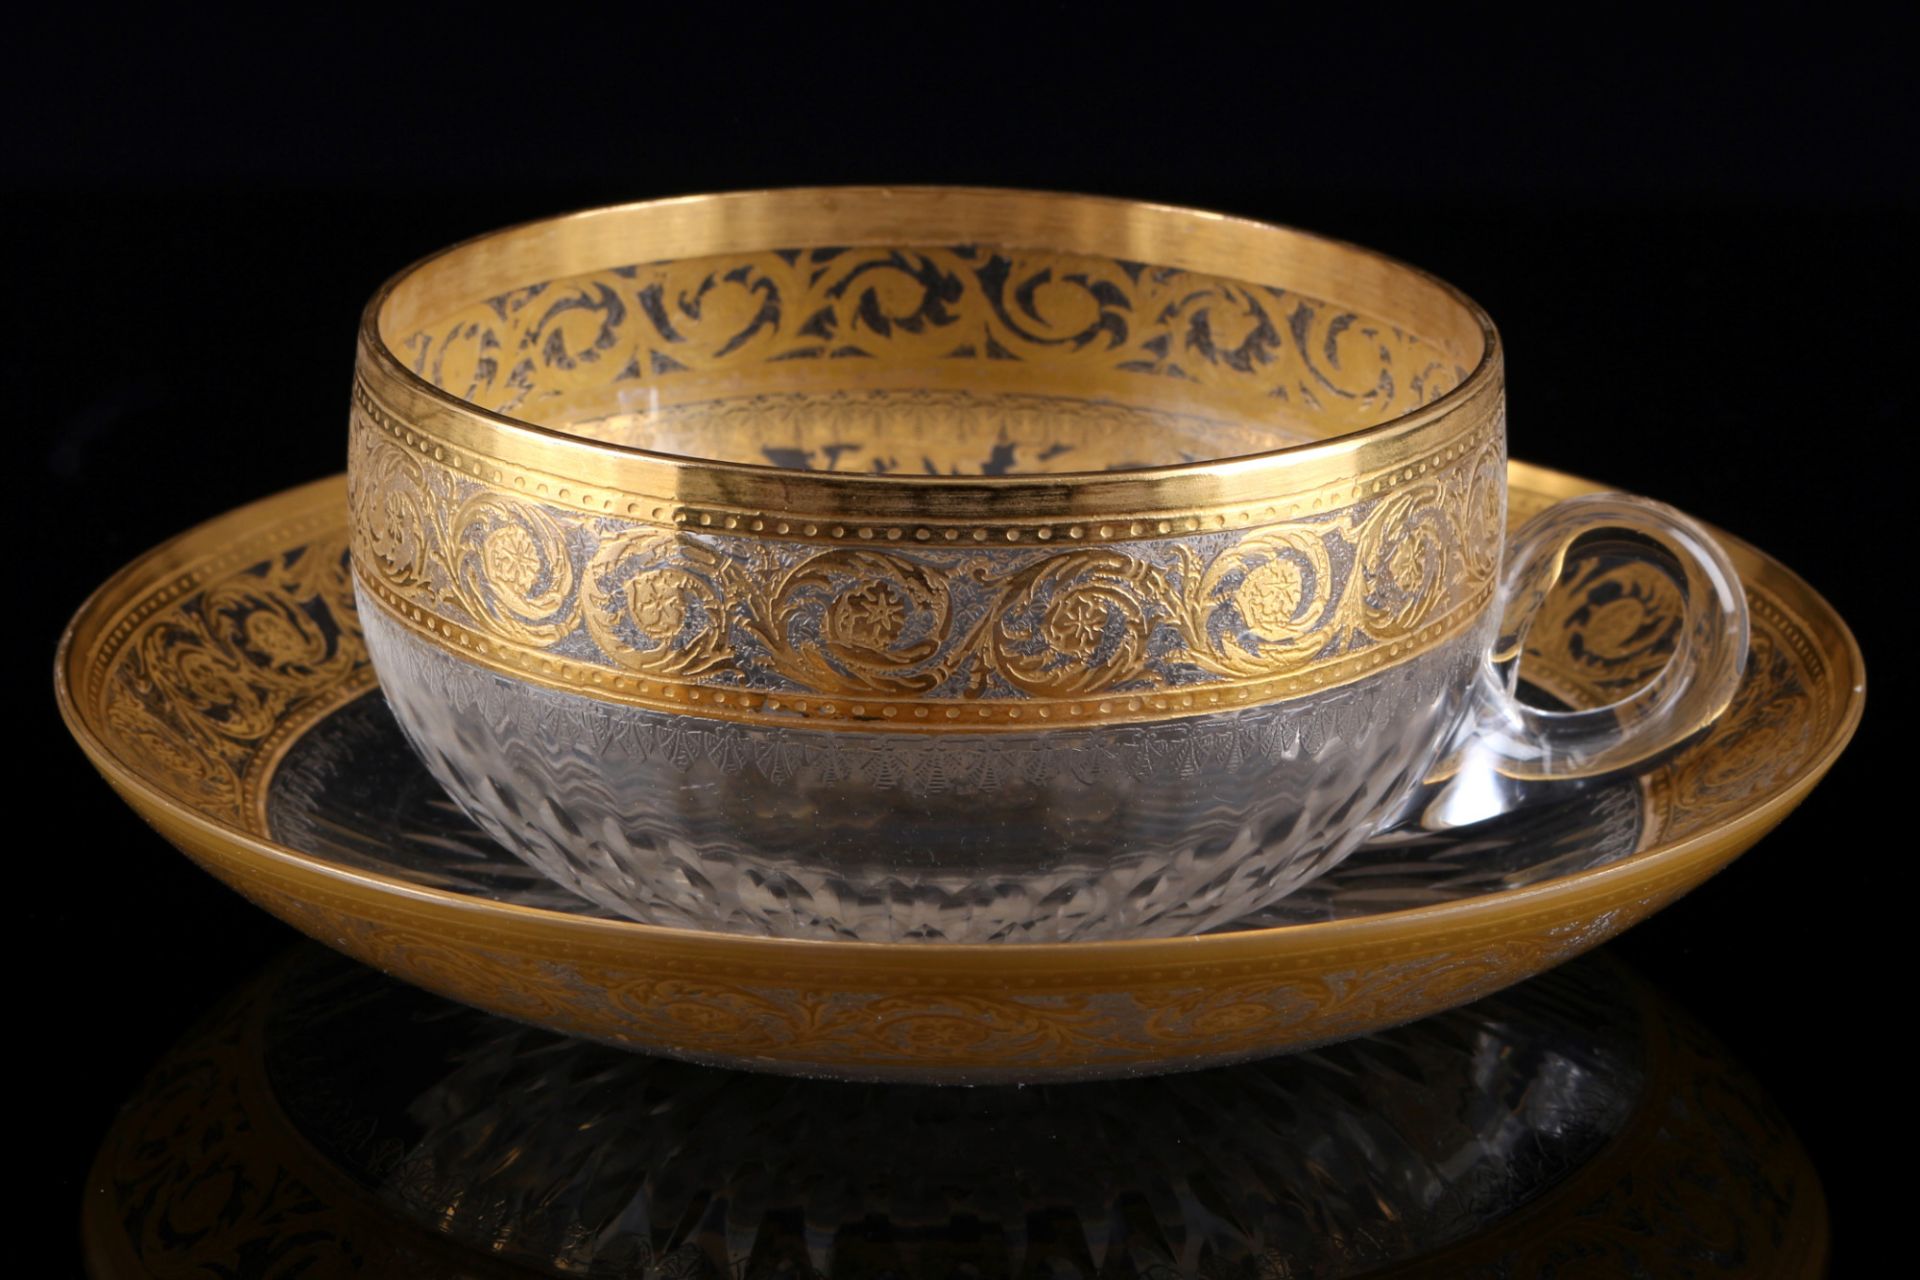 St. Louis Thistle Gold 6 Tassen mit Untertassen, cups with saucers, - Bild 2 aus 3